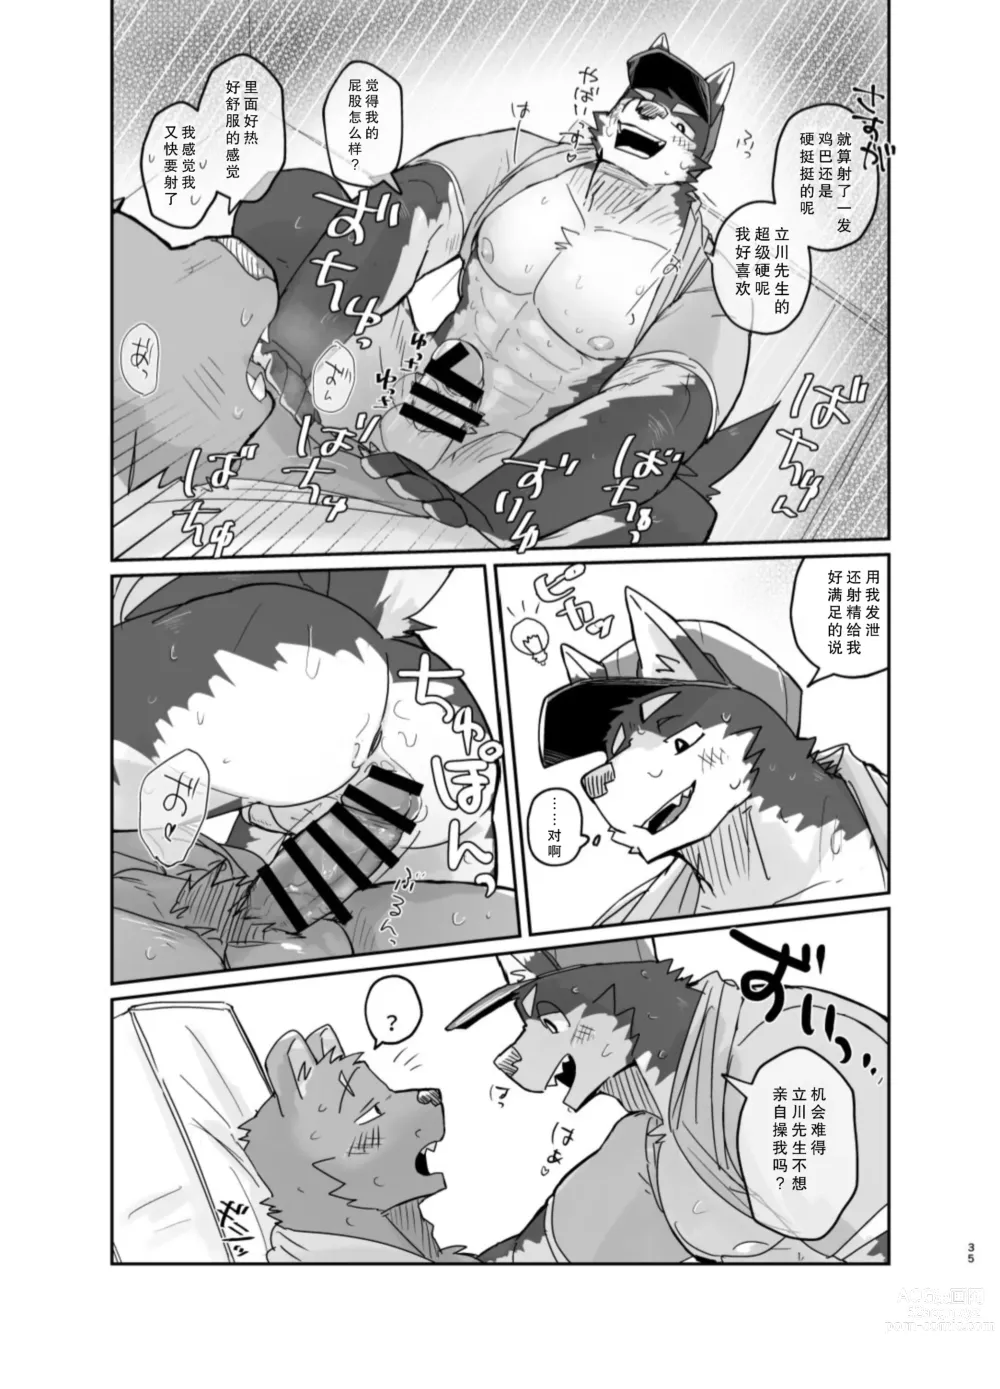 Page 35 of doujinshi 搬家的十分钟服务